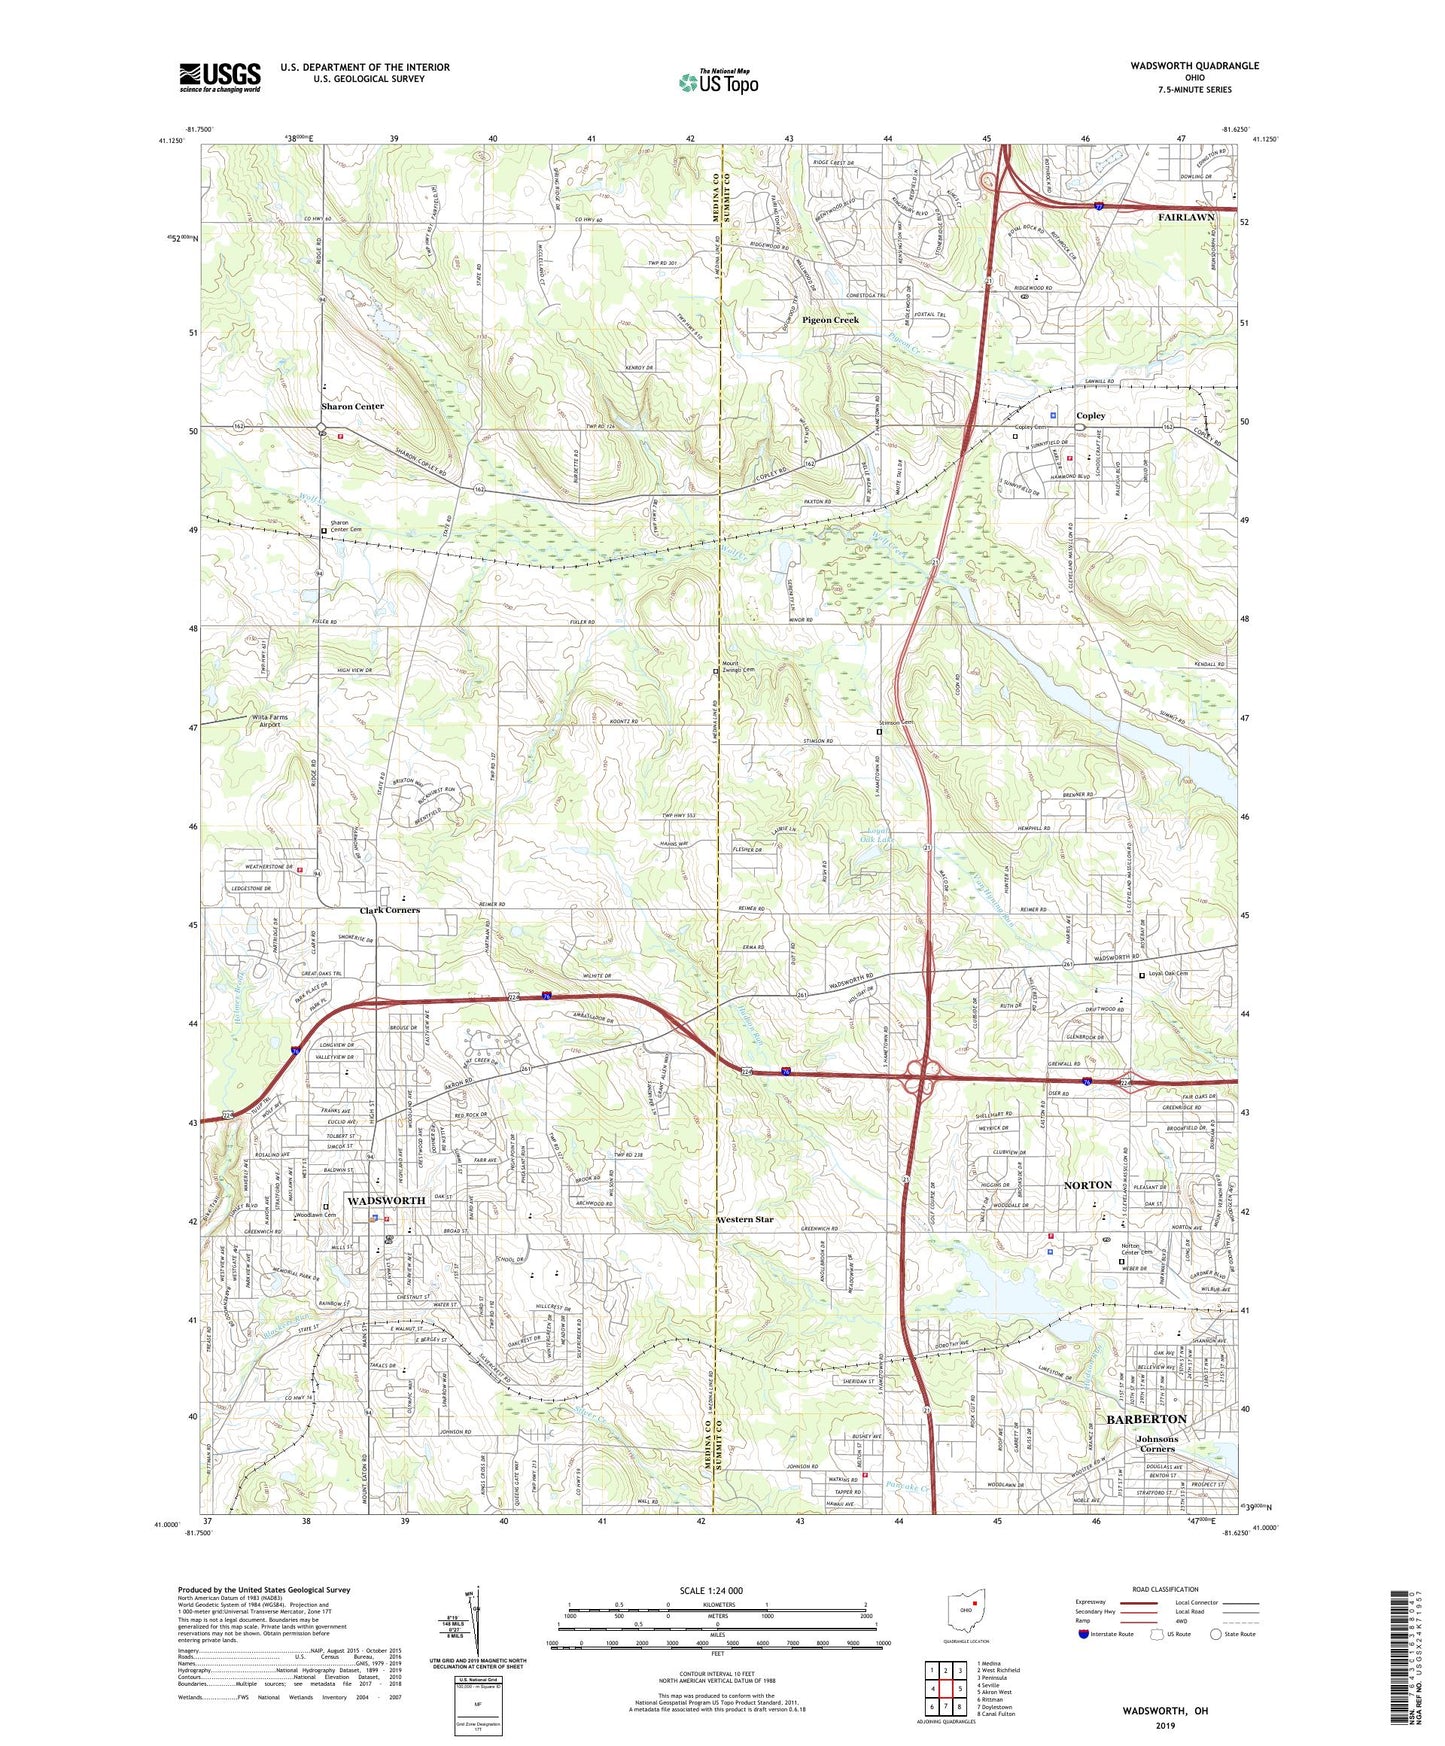 Wadsworth Ohio US Topo Map Image